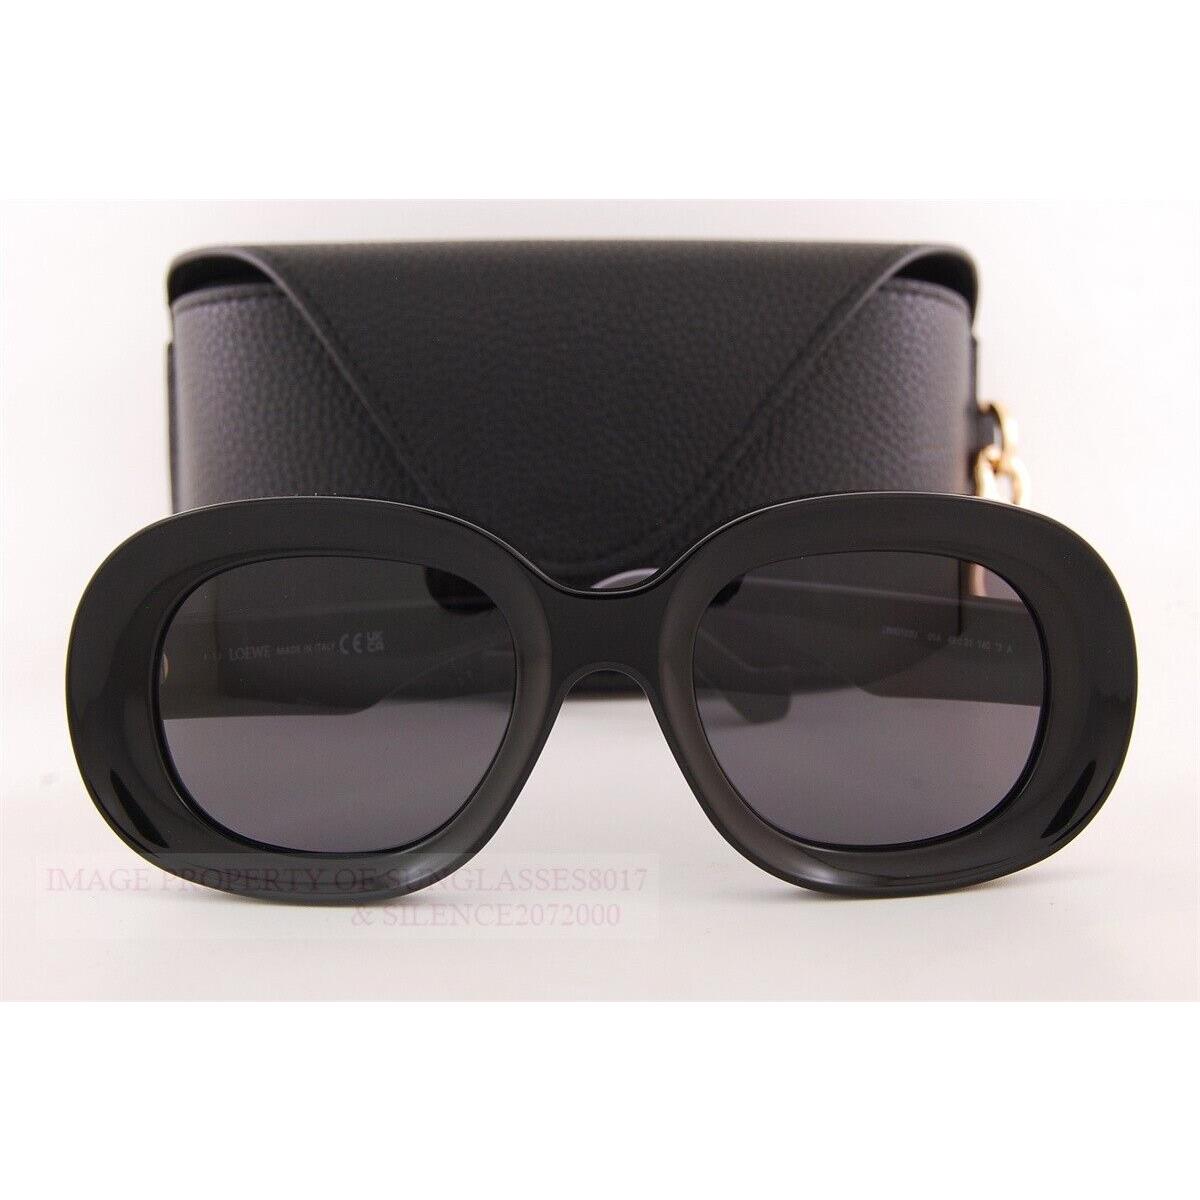 Loewe sunglasses  - Black Frame, Gray Lens